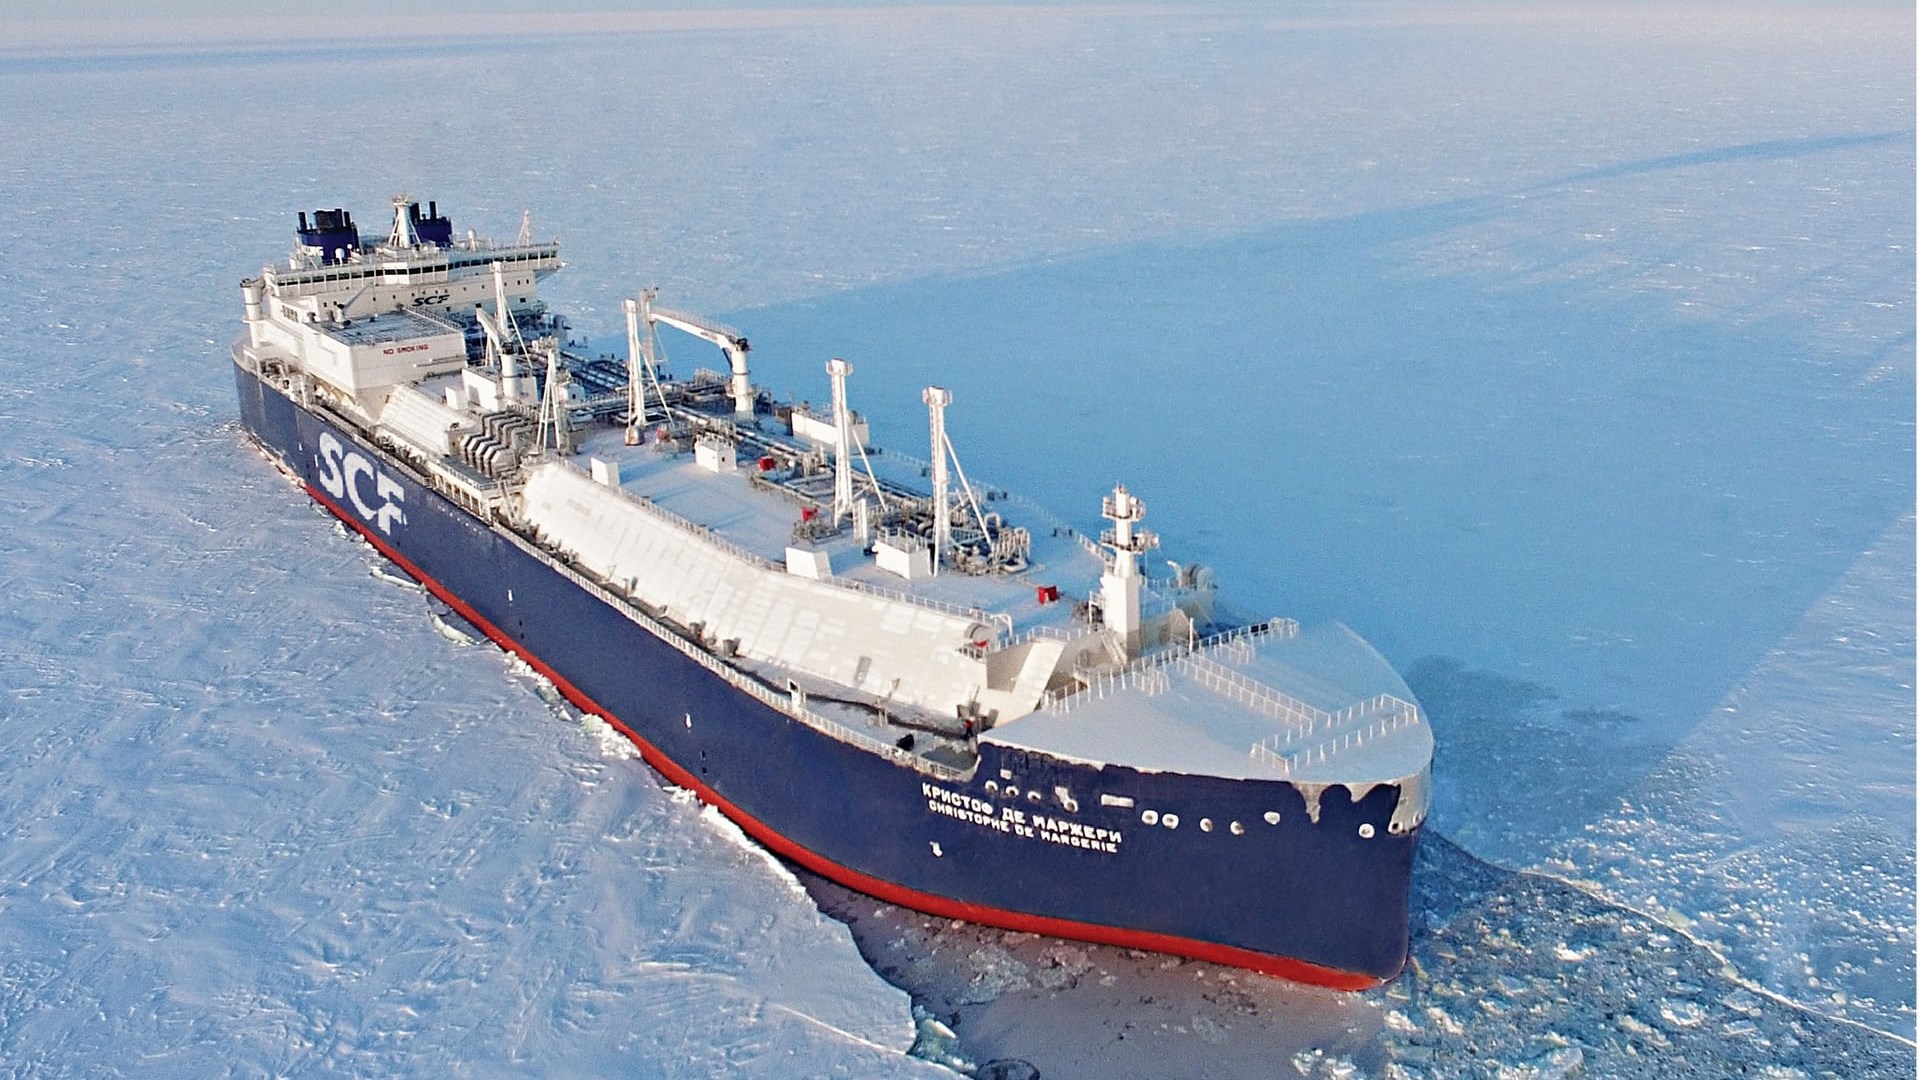 Δεξαμενόπλοιο πέρασε για πρώτη φορά την Αρκτική χωρίς συνοδεία παγοθραυστικών λόγω της κλιματικής αλλαγής